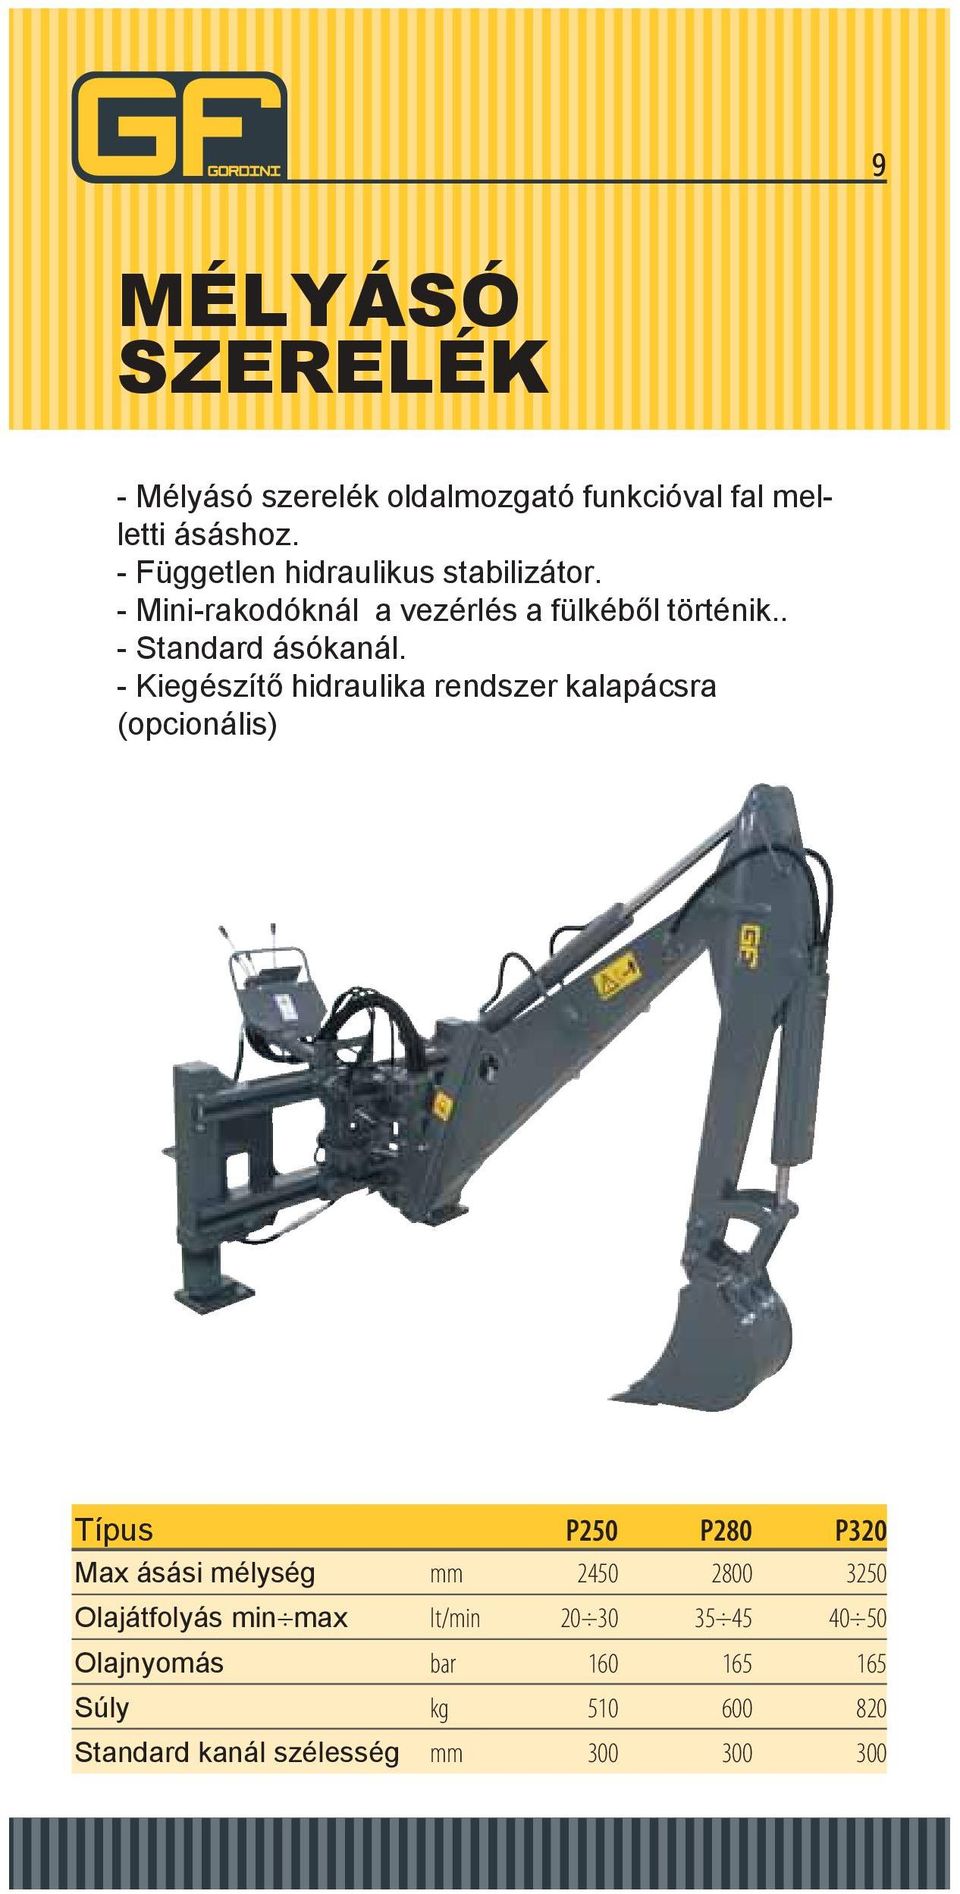 - Kiegészítő hidraulika rendszer kalapácsra (opcionális) Típus P250 P280 P320 Max ásási mélység mm 2450 2800